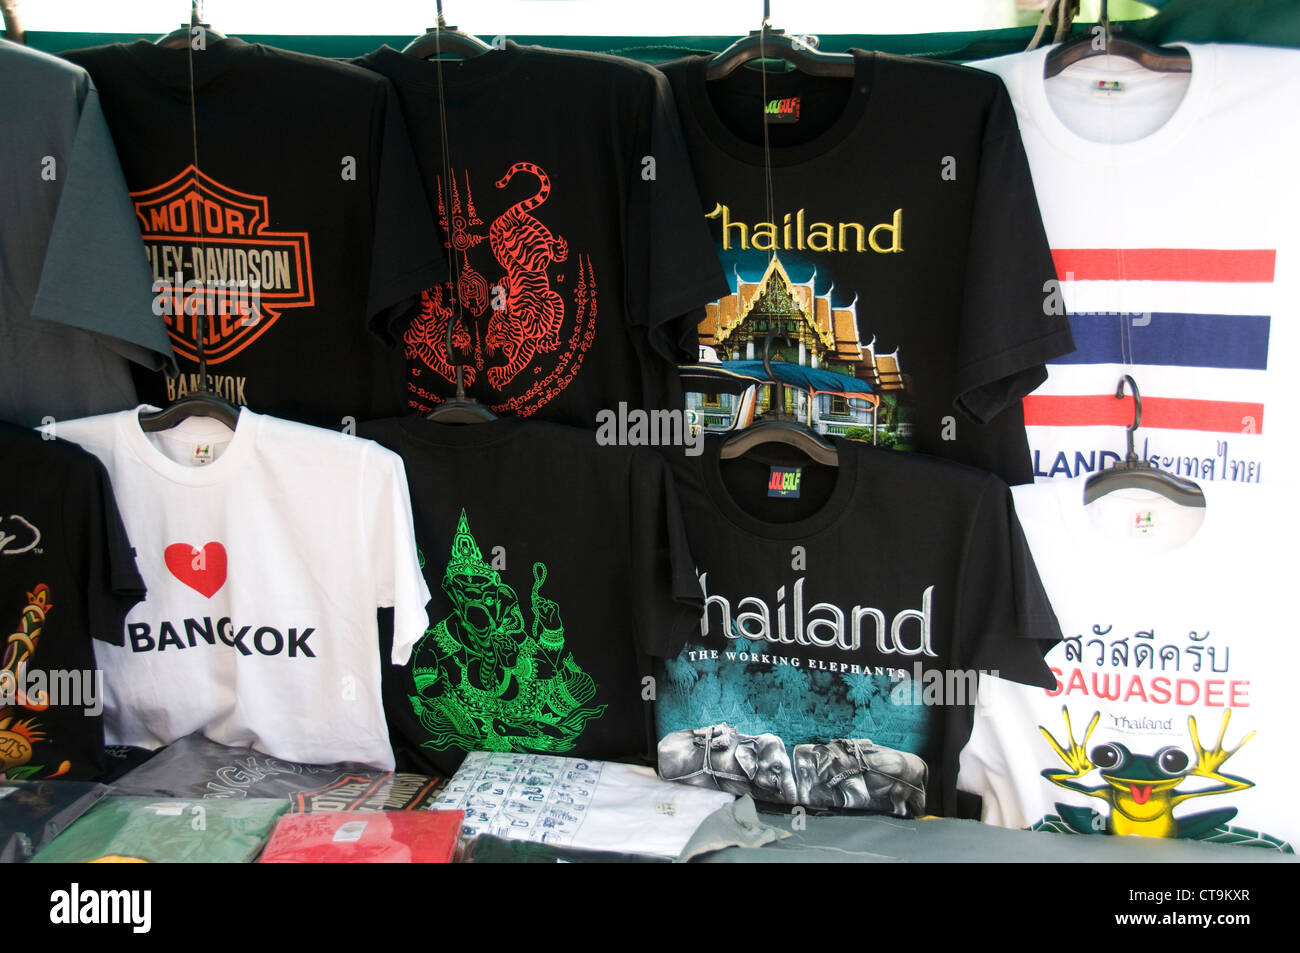 Thailand t shirts Banque de photographies et d'images à haute résolution -  Alamy